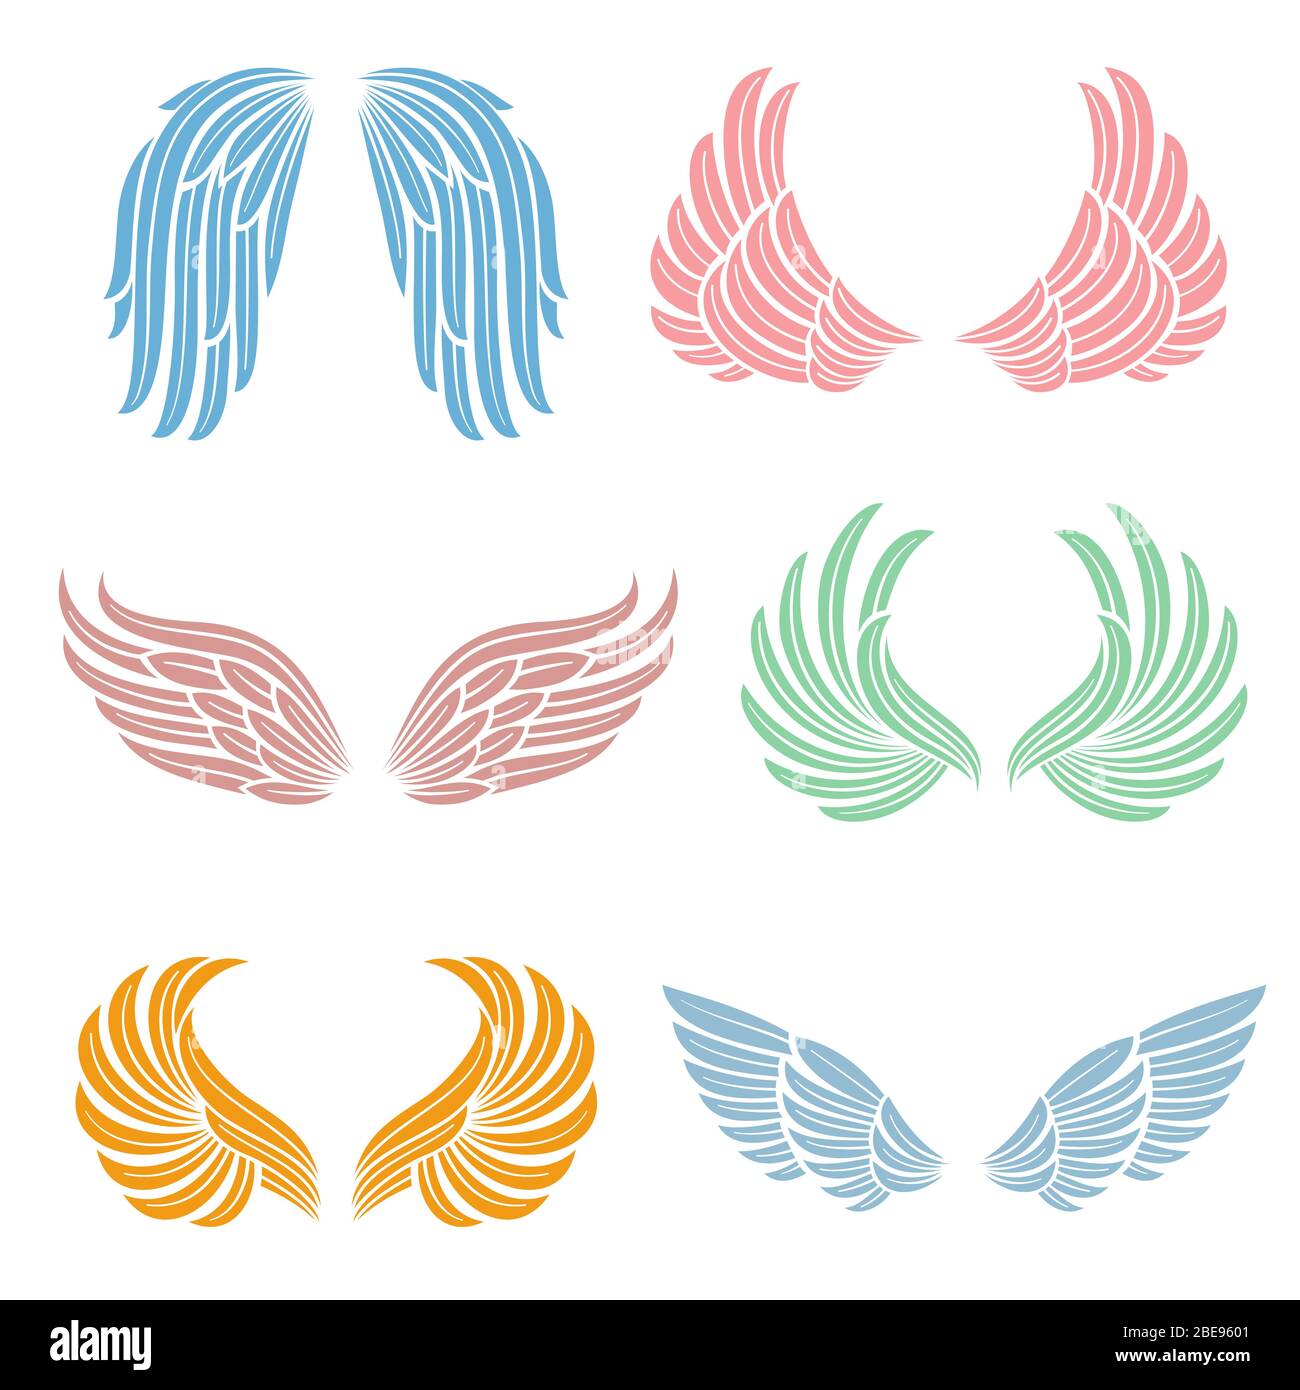 Ailes d'ange élégantes avec plumes longues. Jeu de vecteurs isolés de symboles angéliques. Aile colorée de l'illustration de la collection Illustration de Vecteur